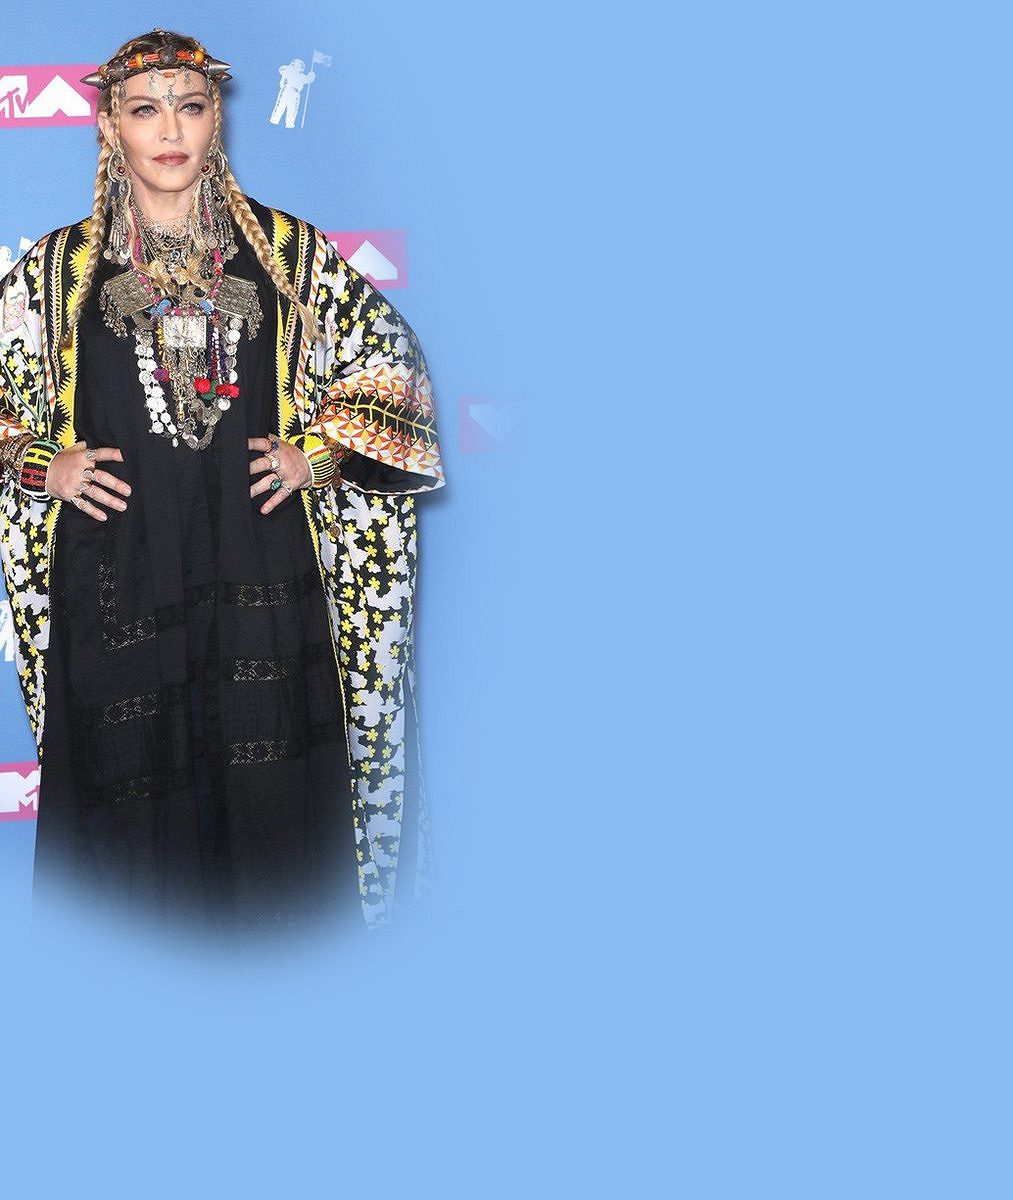 Čerstvá šedesátnice Madonna oblékla podivné roucho a naštvala fanoušky nedávno zesnulé Arethy Franklin